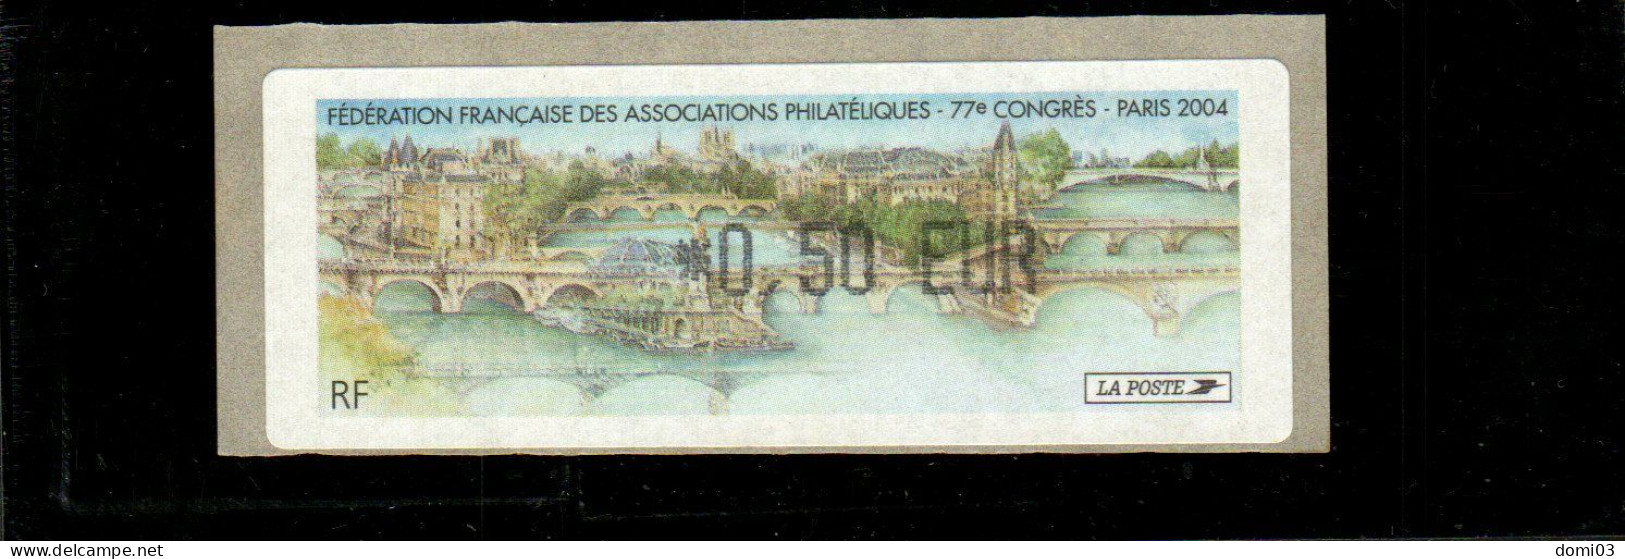 77è Congrès FFAP Paris 2004 - 1999-2009 Illustrated Franking Labels